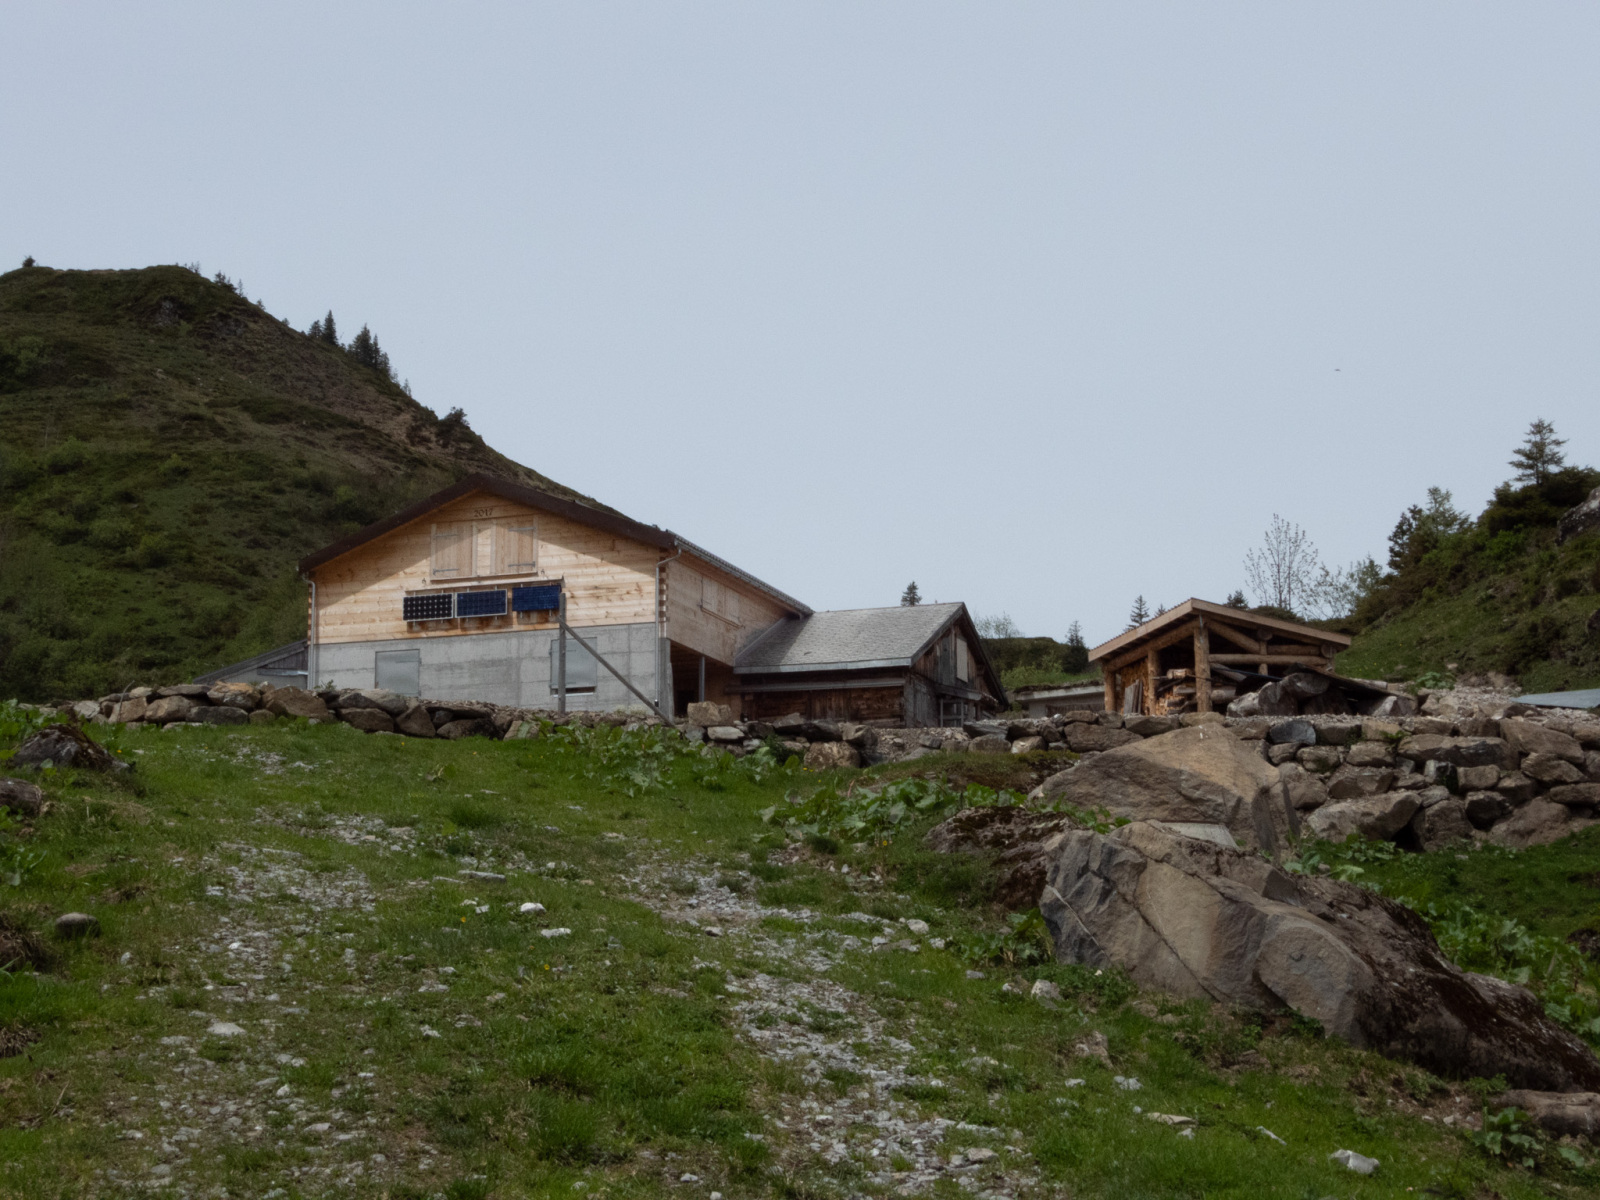 Alp Hinderst Hütten, Muuotathal